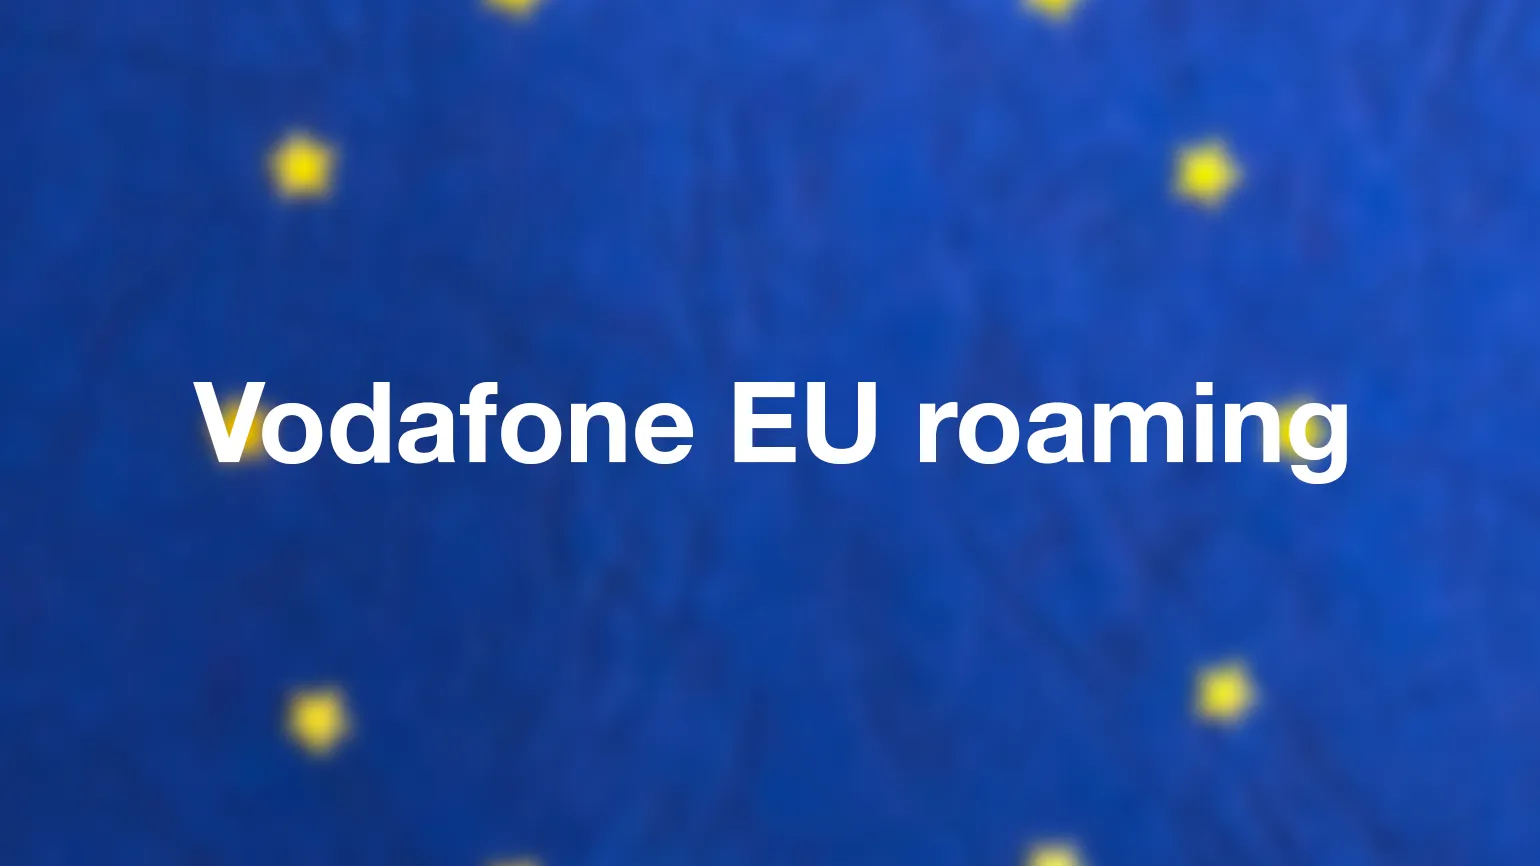 Vodafone EU roaming - after Brexit